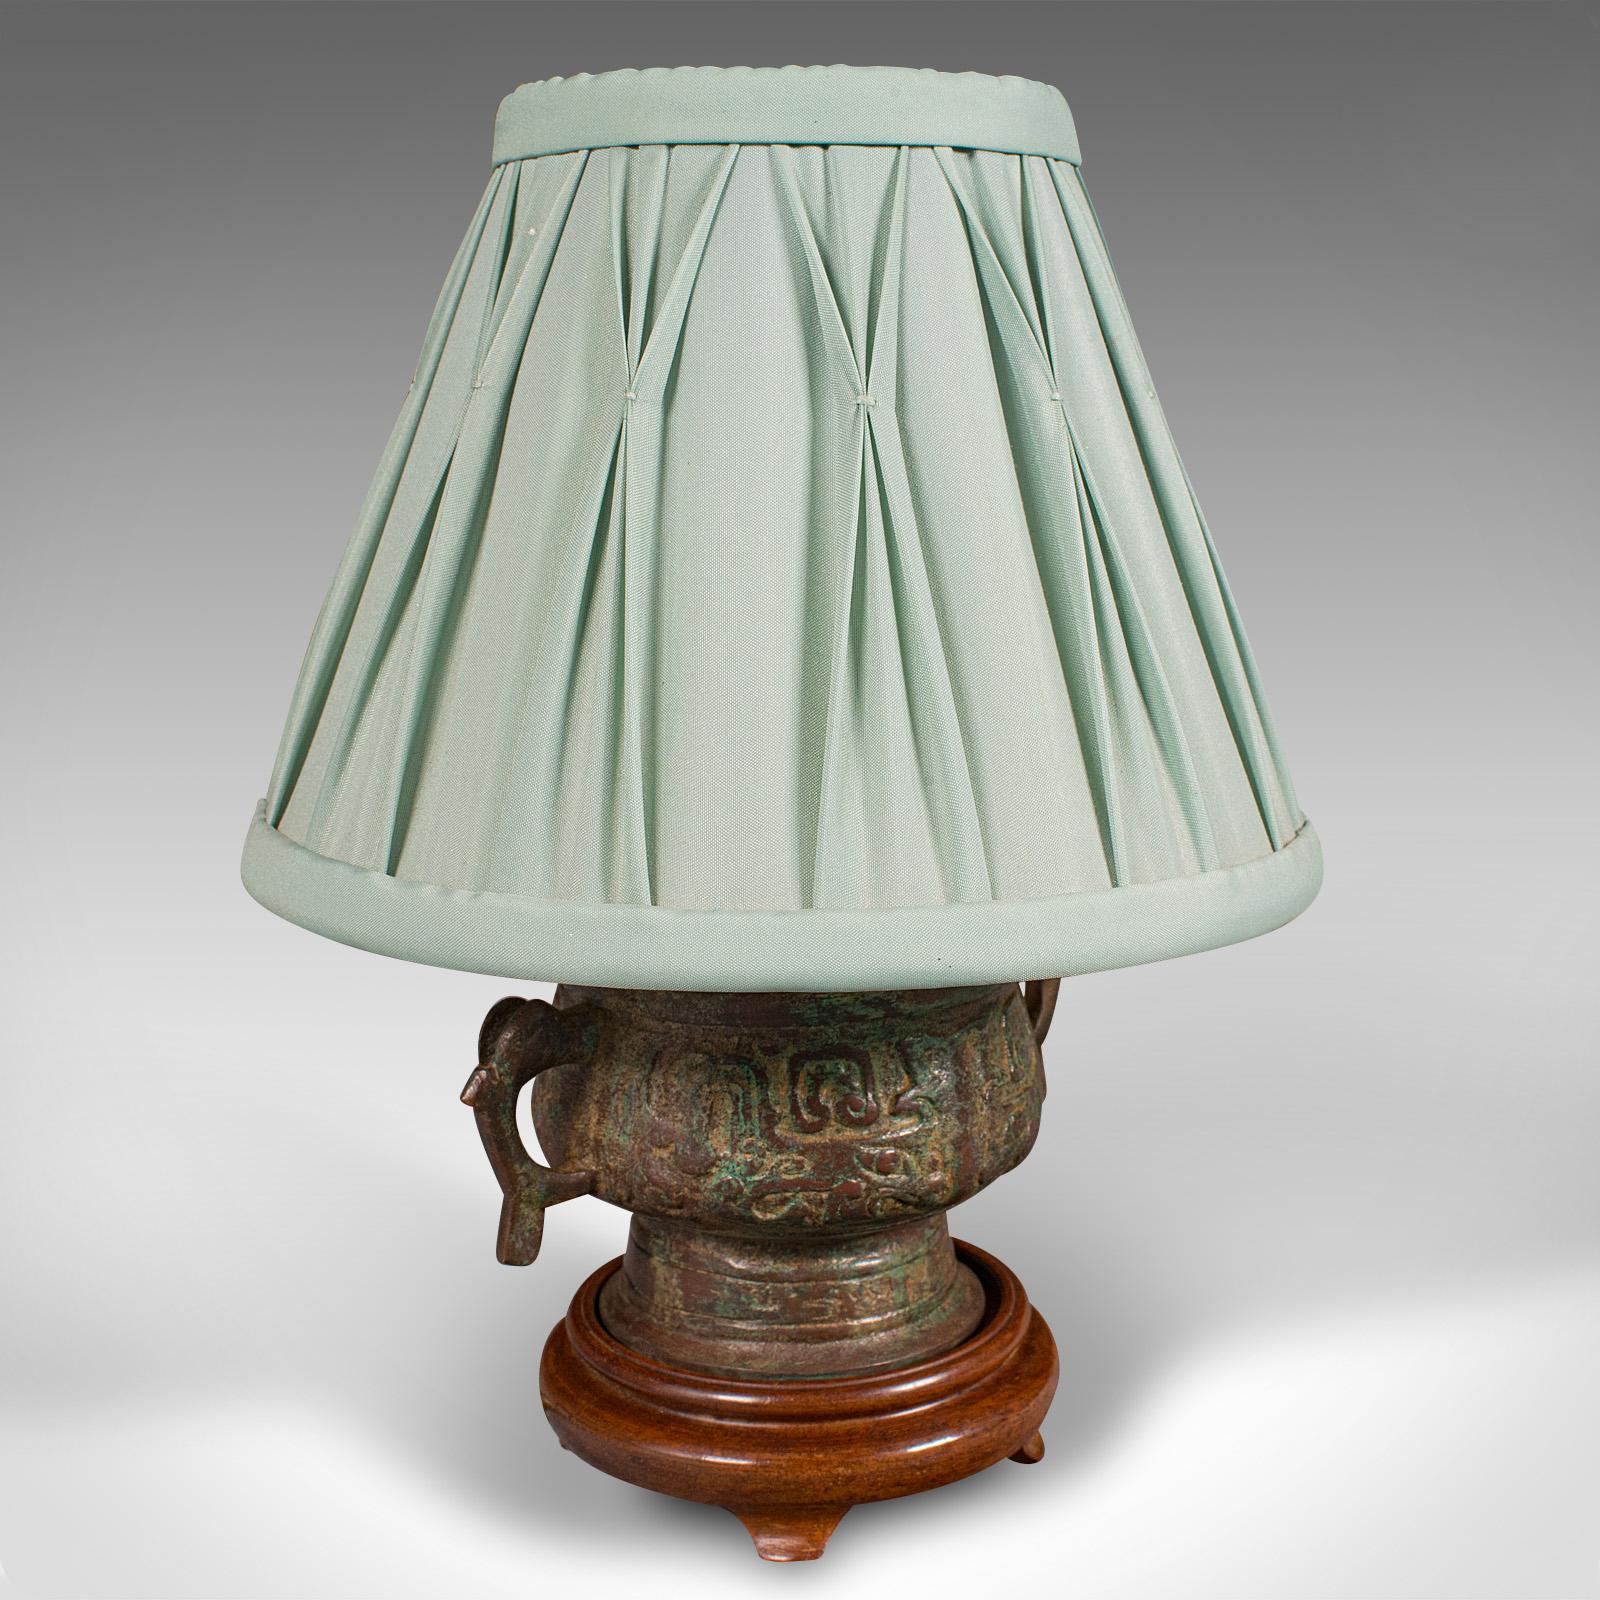 
Il s'agit d'une petite lampe d'appoint vintage. Lampe de bureau ou de table chinoise, en bronze et acajou, datant de la fin du XXe siècle, vers 1970.

D'une finition attrayante et de petites proportions, idéal pour la table d'appoint
Présente une